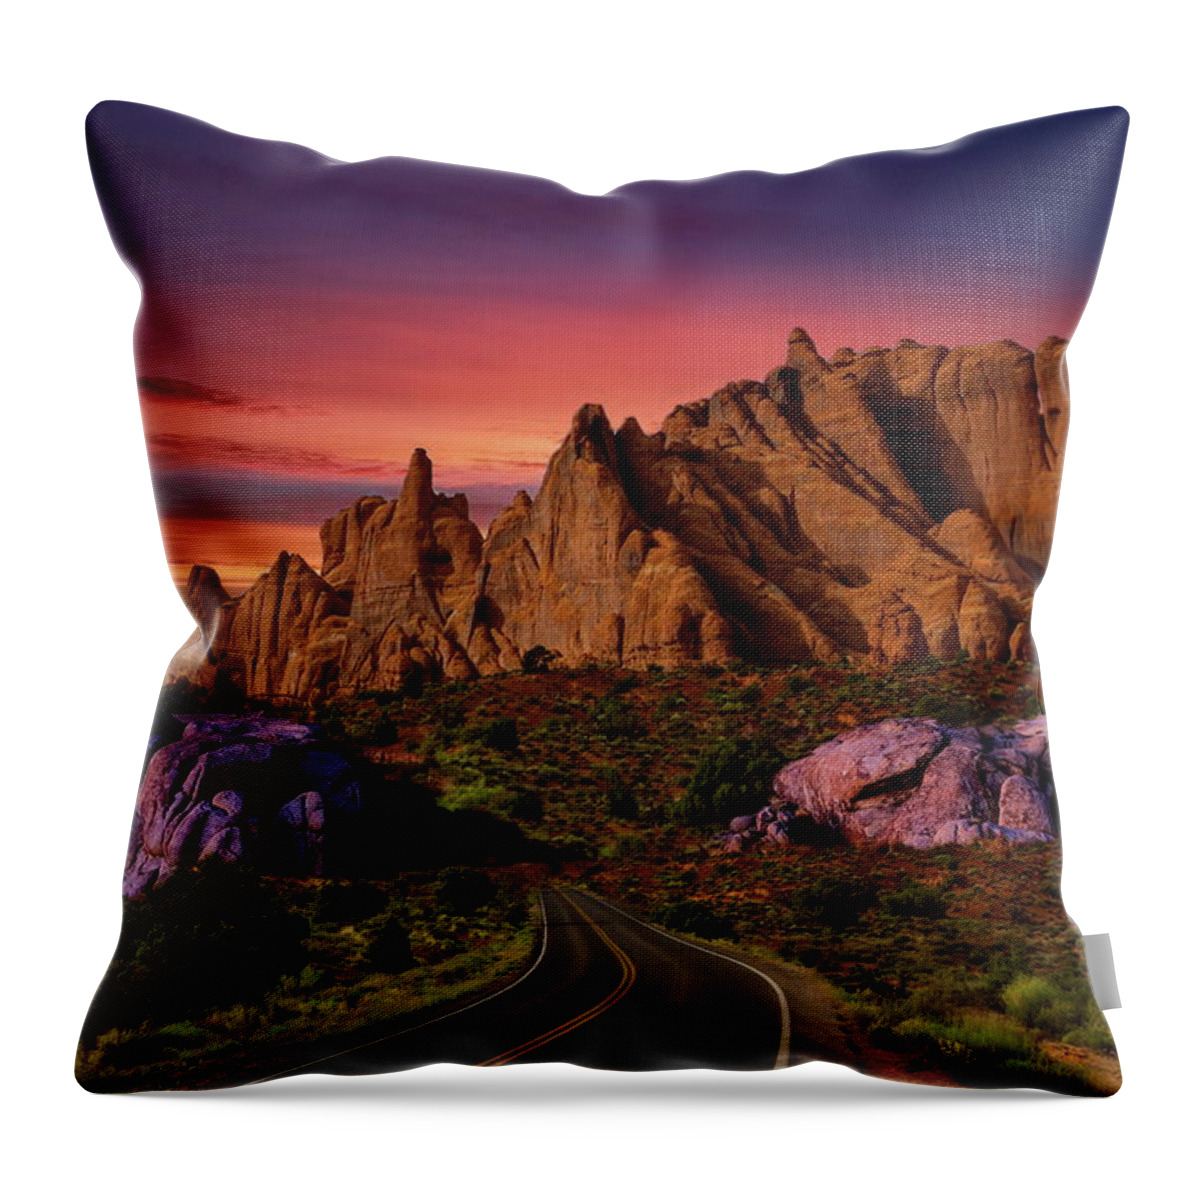 Desert Throw Pillow featuring the photograph Desert Sunset Drive by Russ Harris